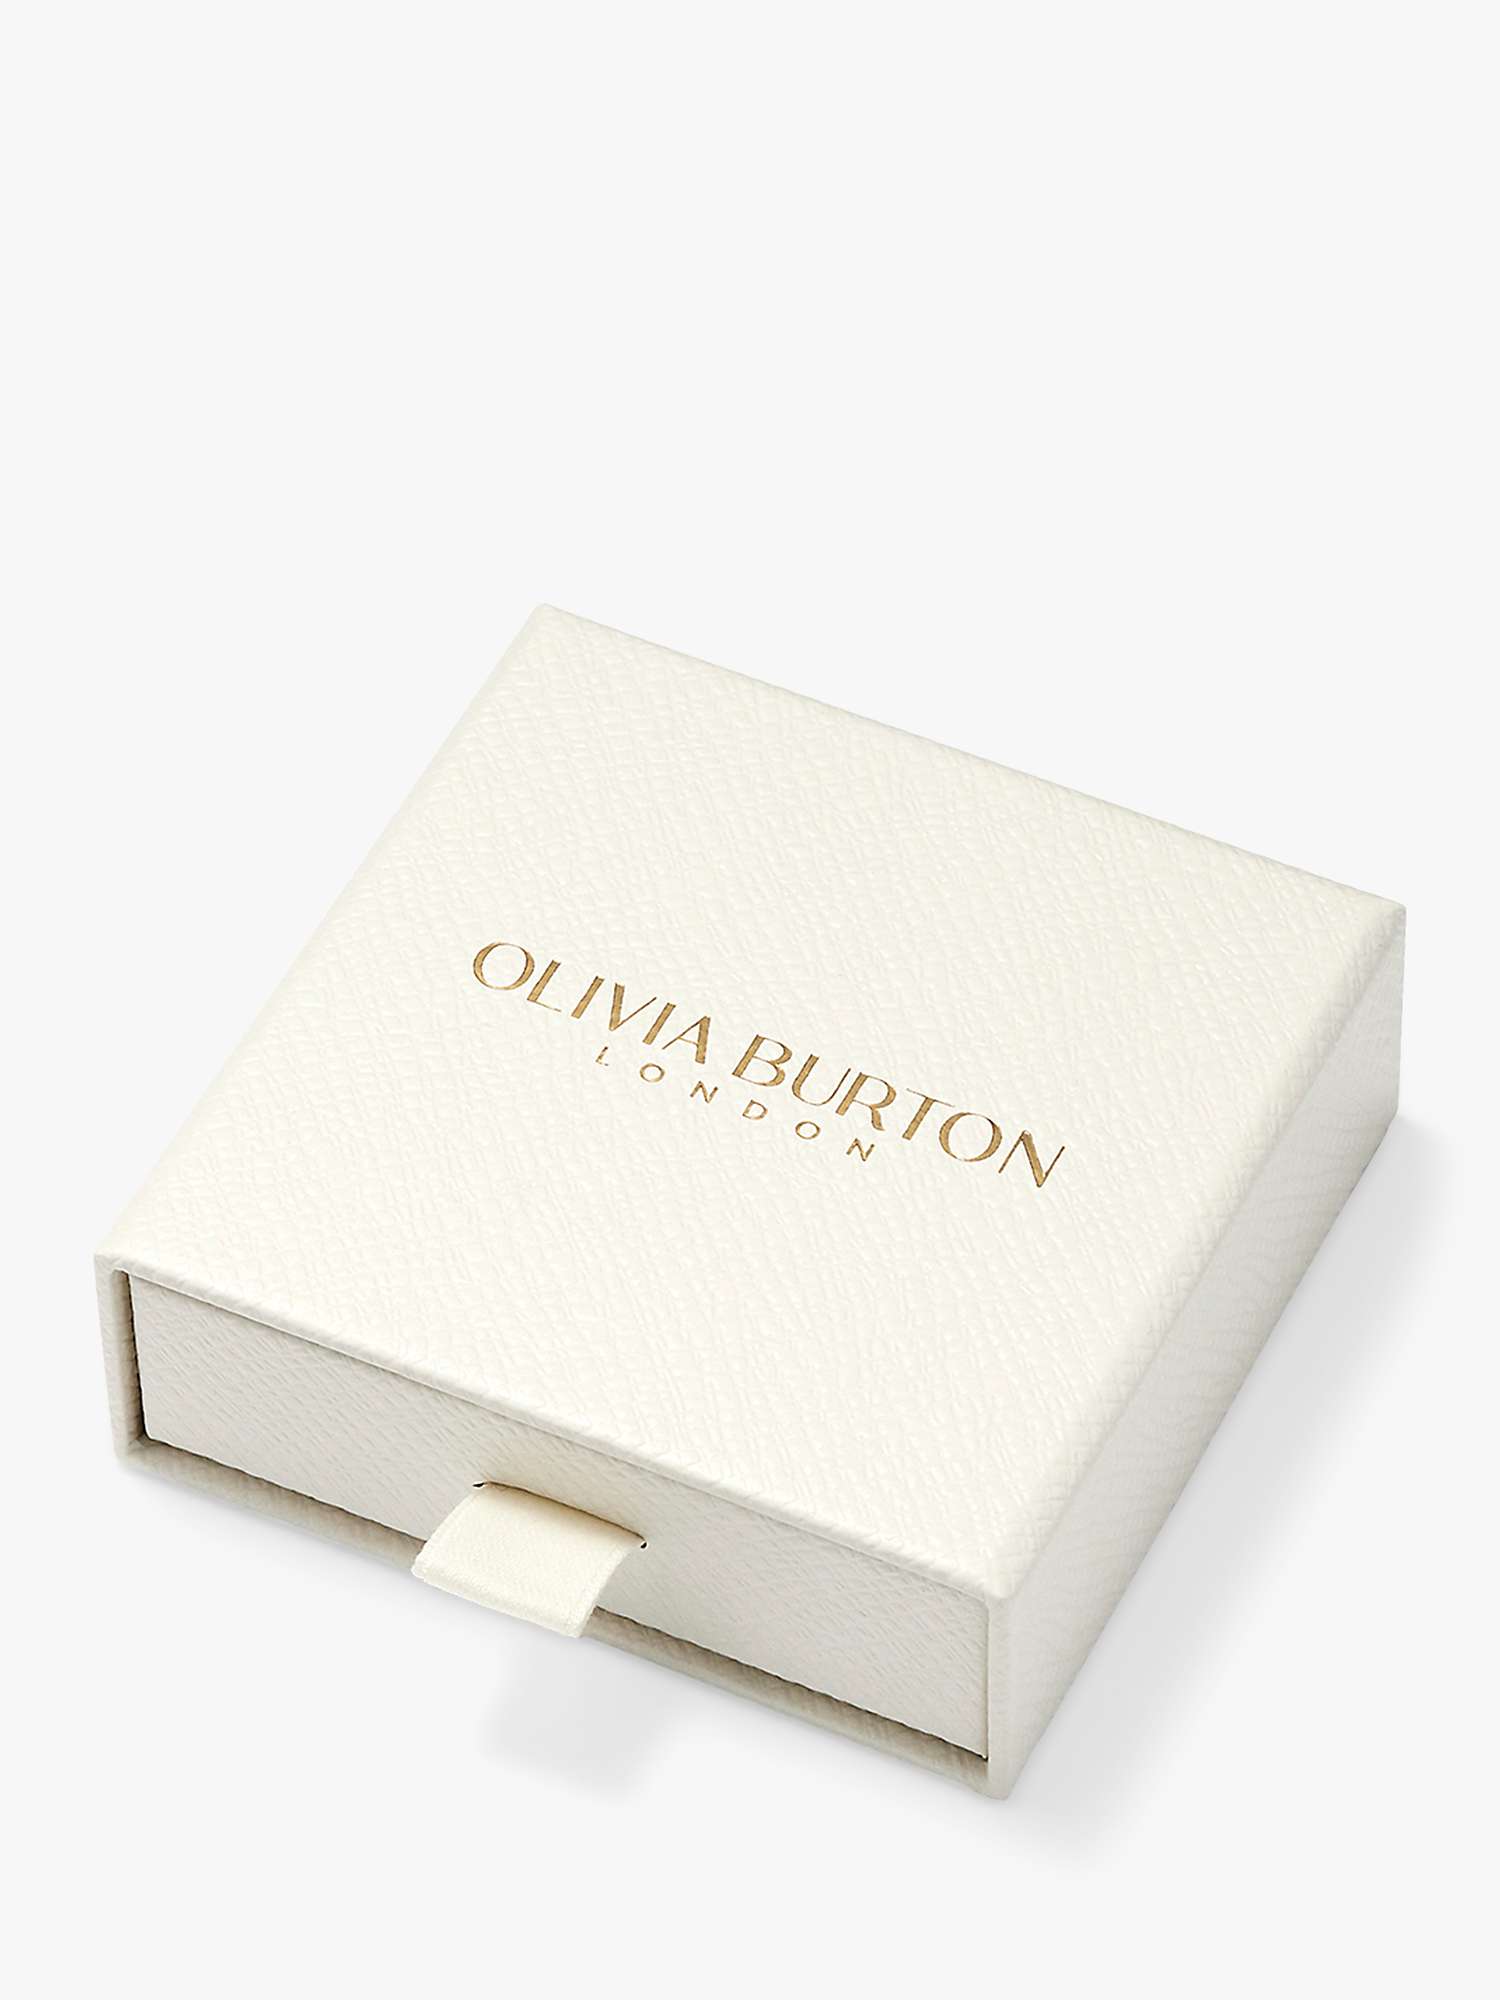 Buy Olivia Burton Honeycomb Link Bracelet, Silver Online at johnlewis.com